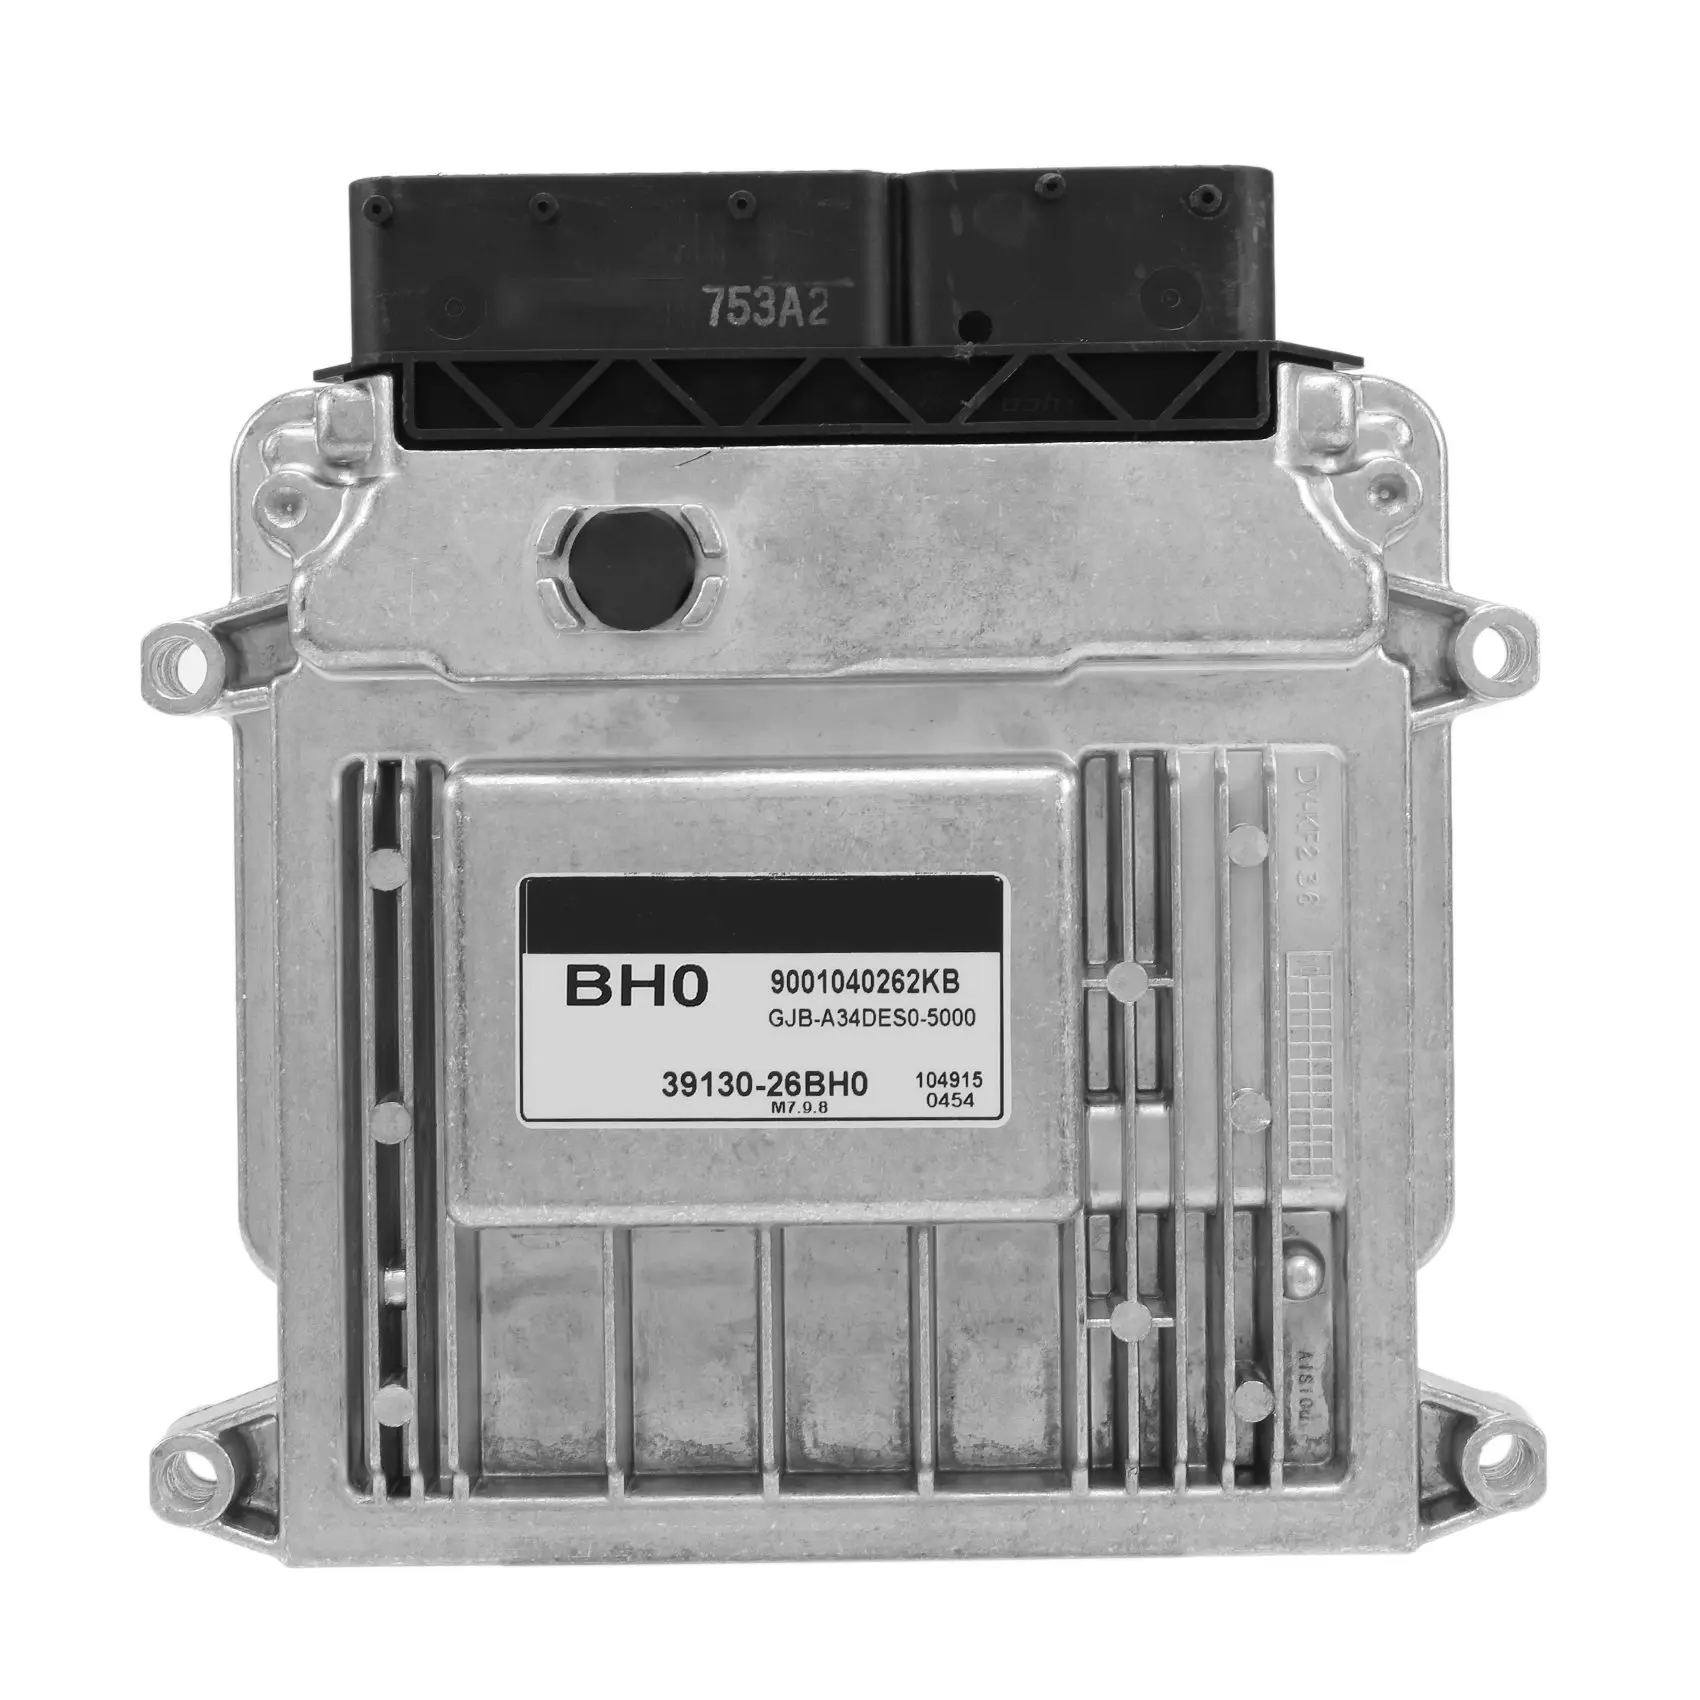 

39130-26BH0 Car Engine Computer Board ECU Electronic Control Unit for -KIA BH0 M7.9.8 3913026BH0